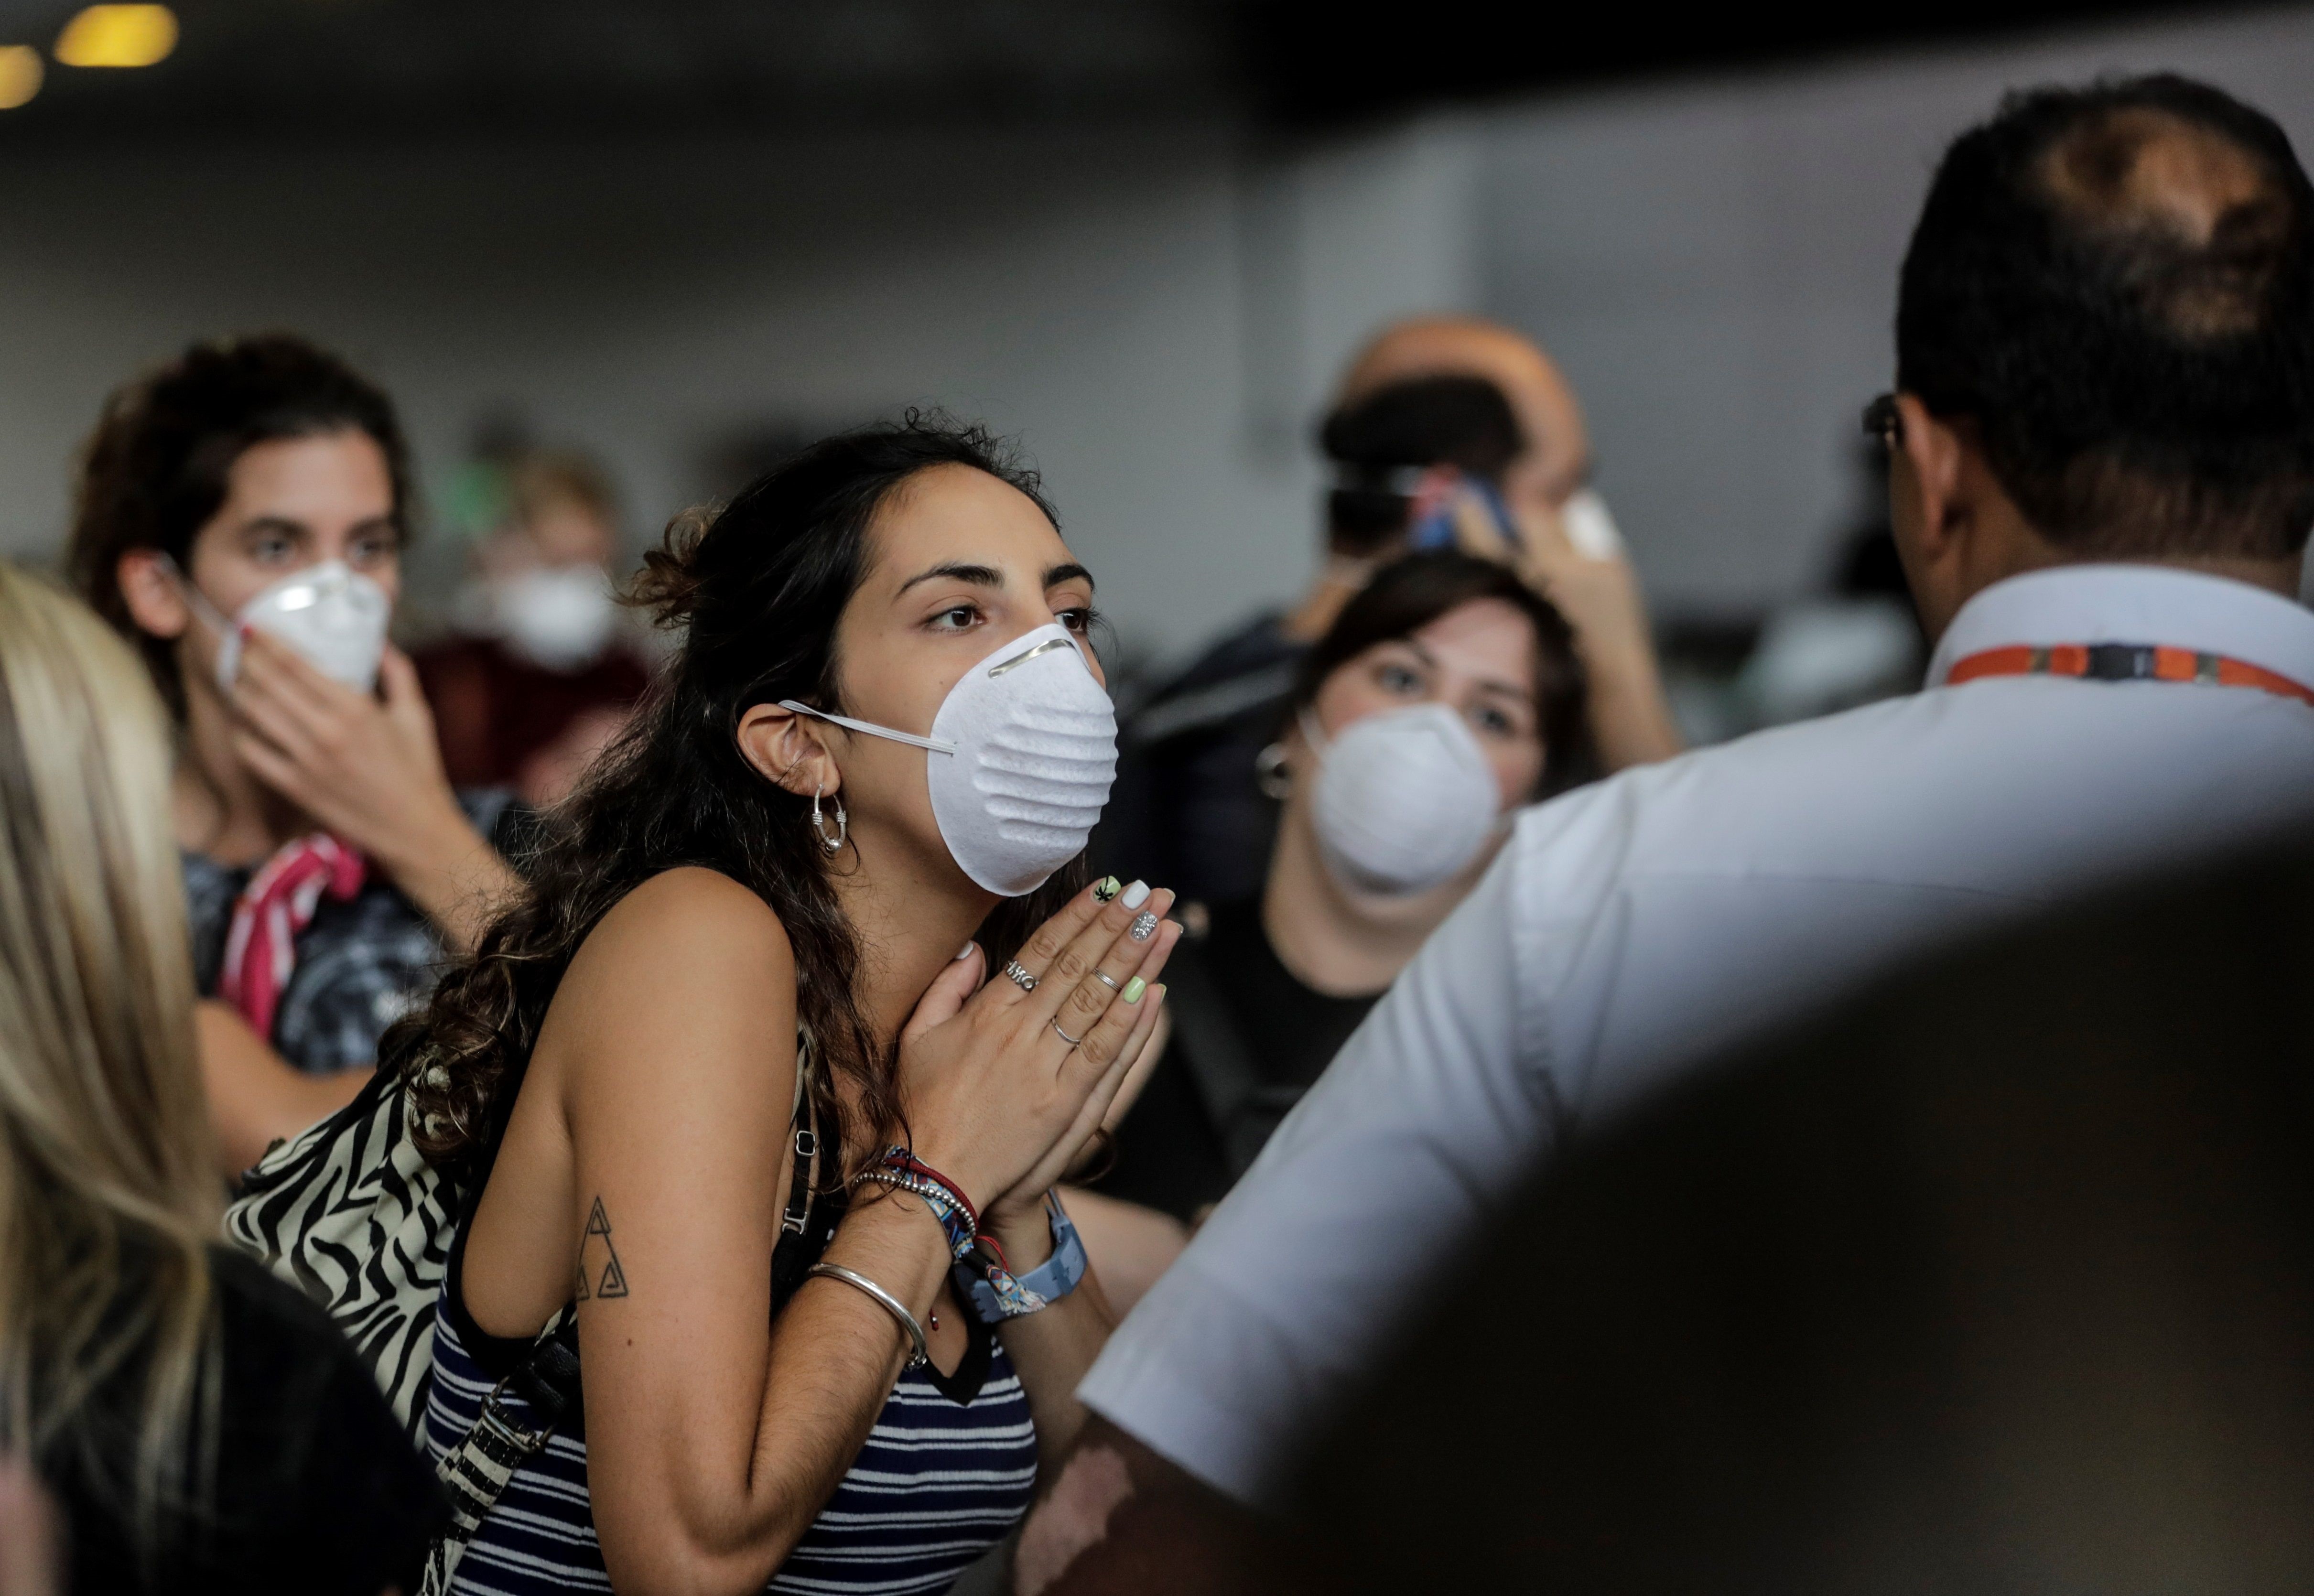 Cientos de extranjeros latinos se quedaron varados en el aeropuerto de Río de Janeiro (Fotos)